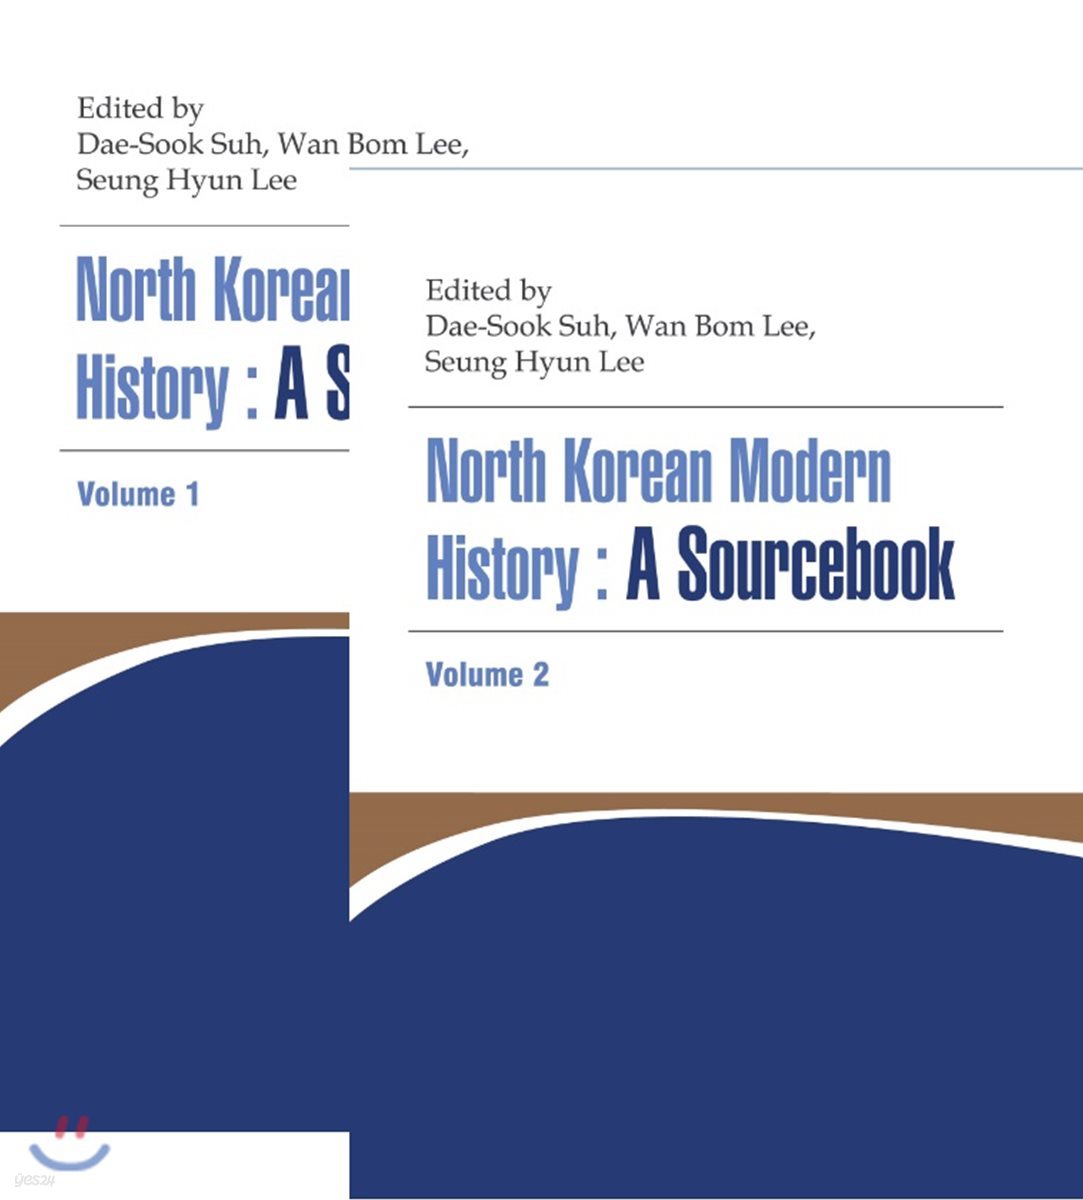 North Korean Modern History : A Sourcebook Volume 2